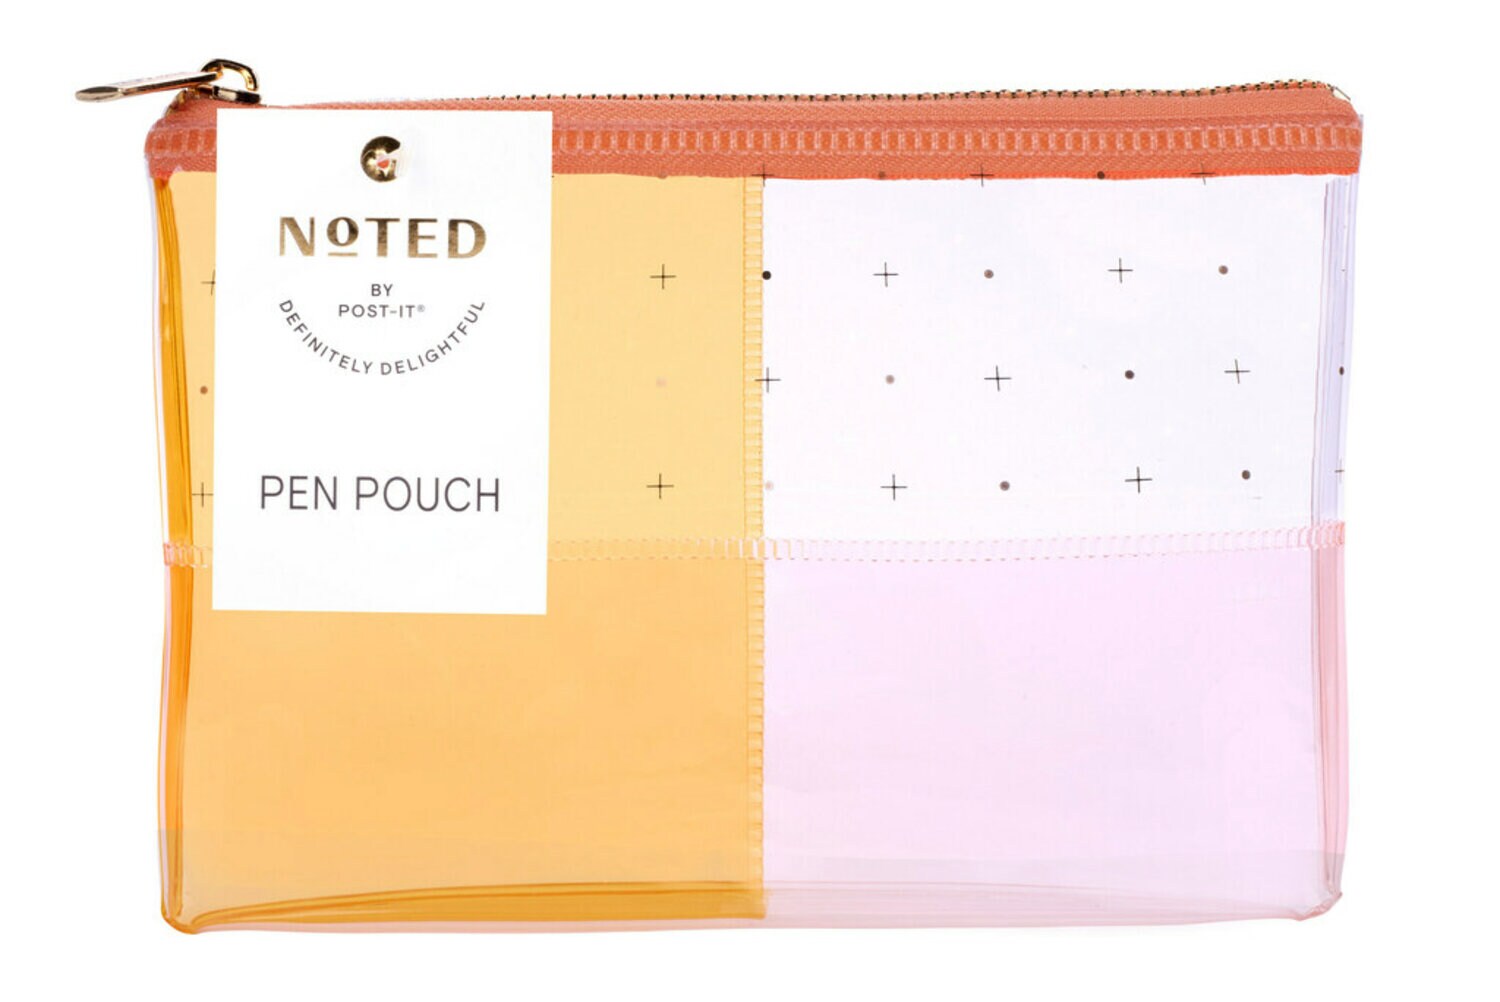 7100264944 - Post-it Pen Pouch NTD5-PP-WMW, One Pen Pouch